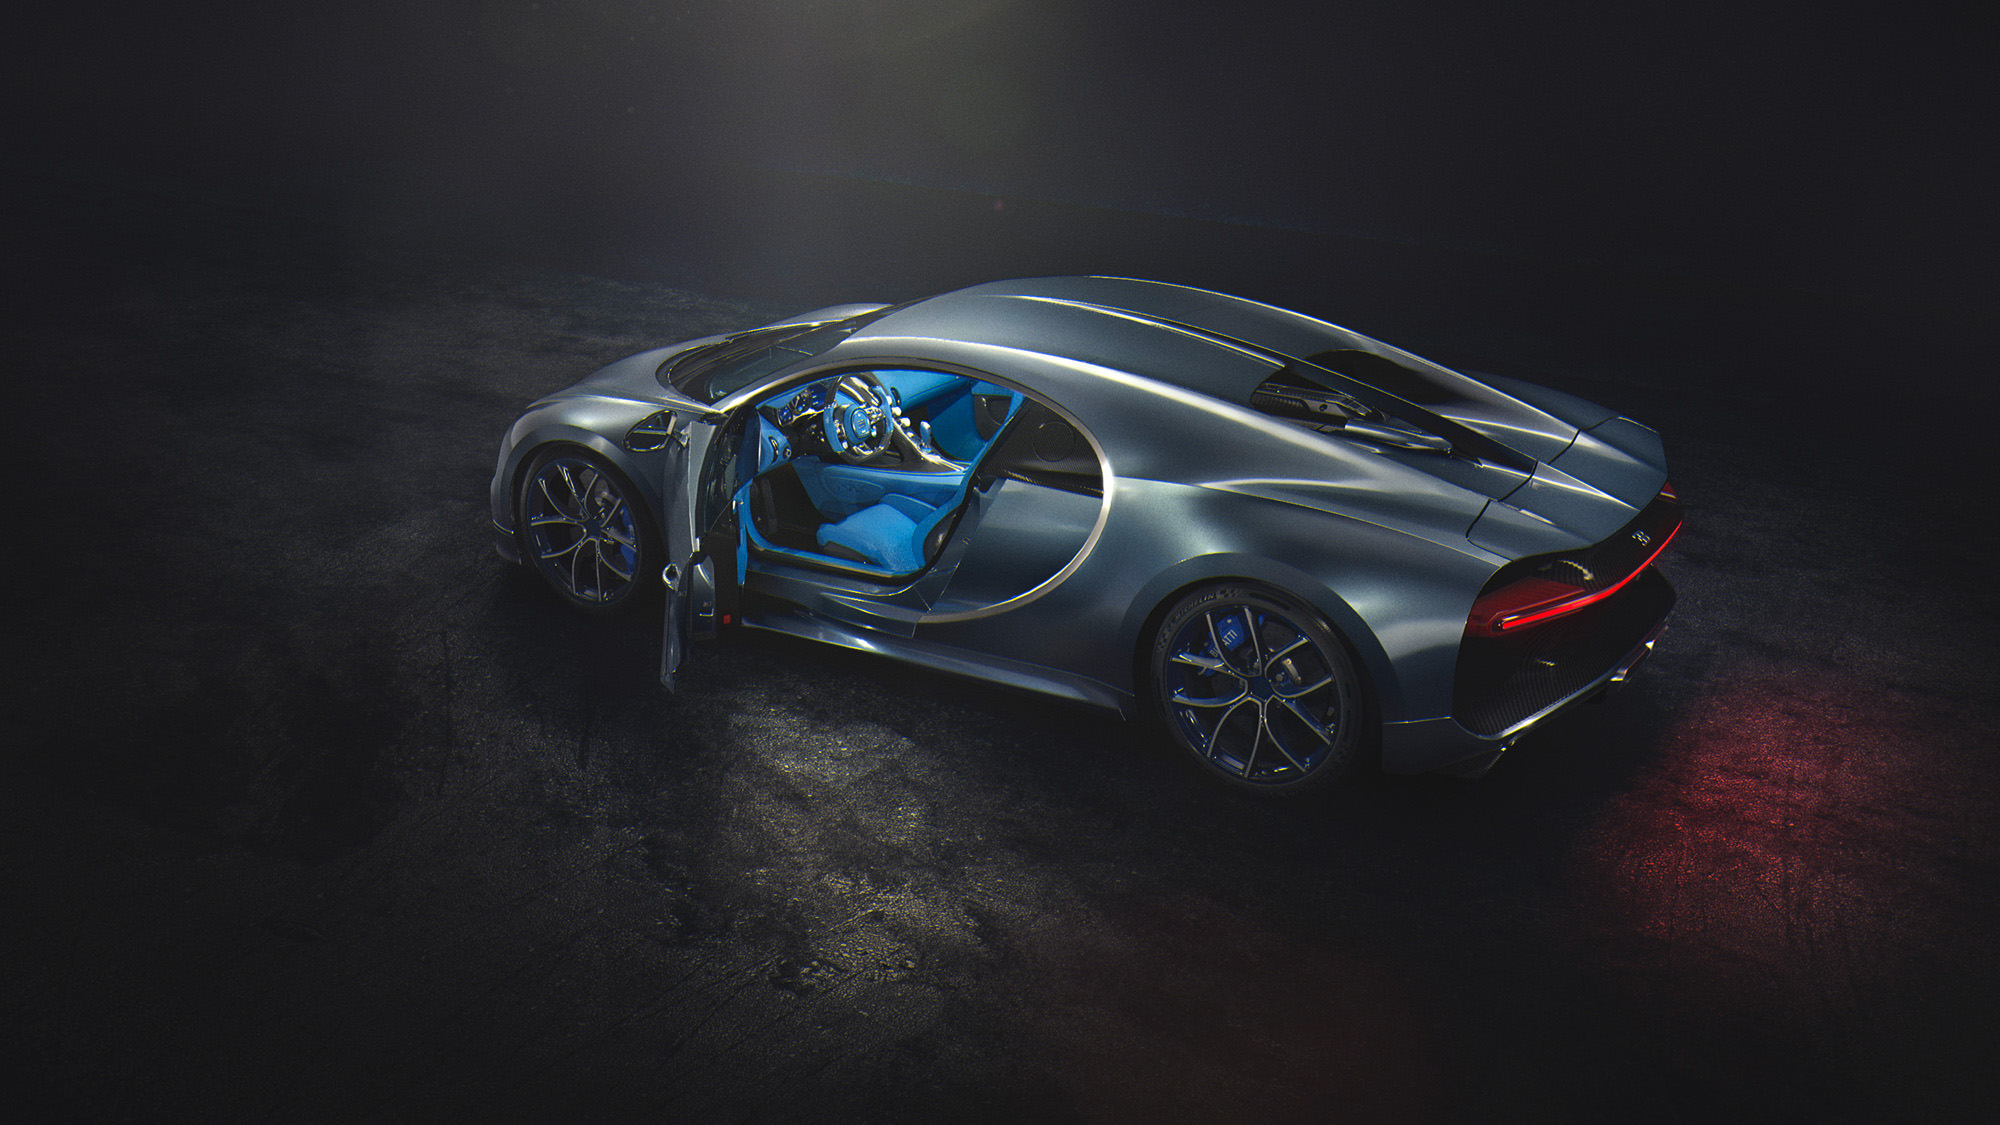 Free photo Grey Bugatti Chiron in the dark with blue interior